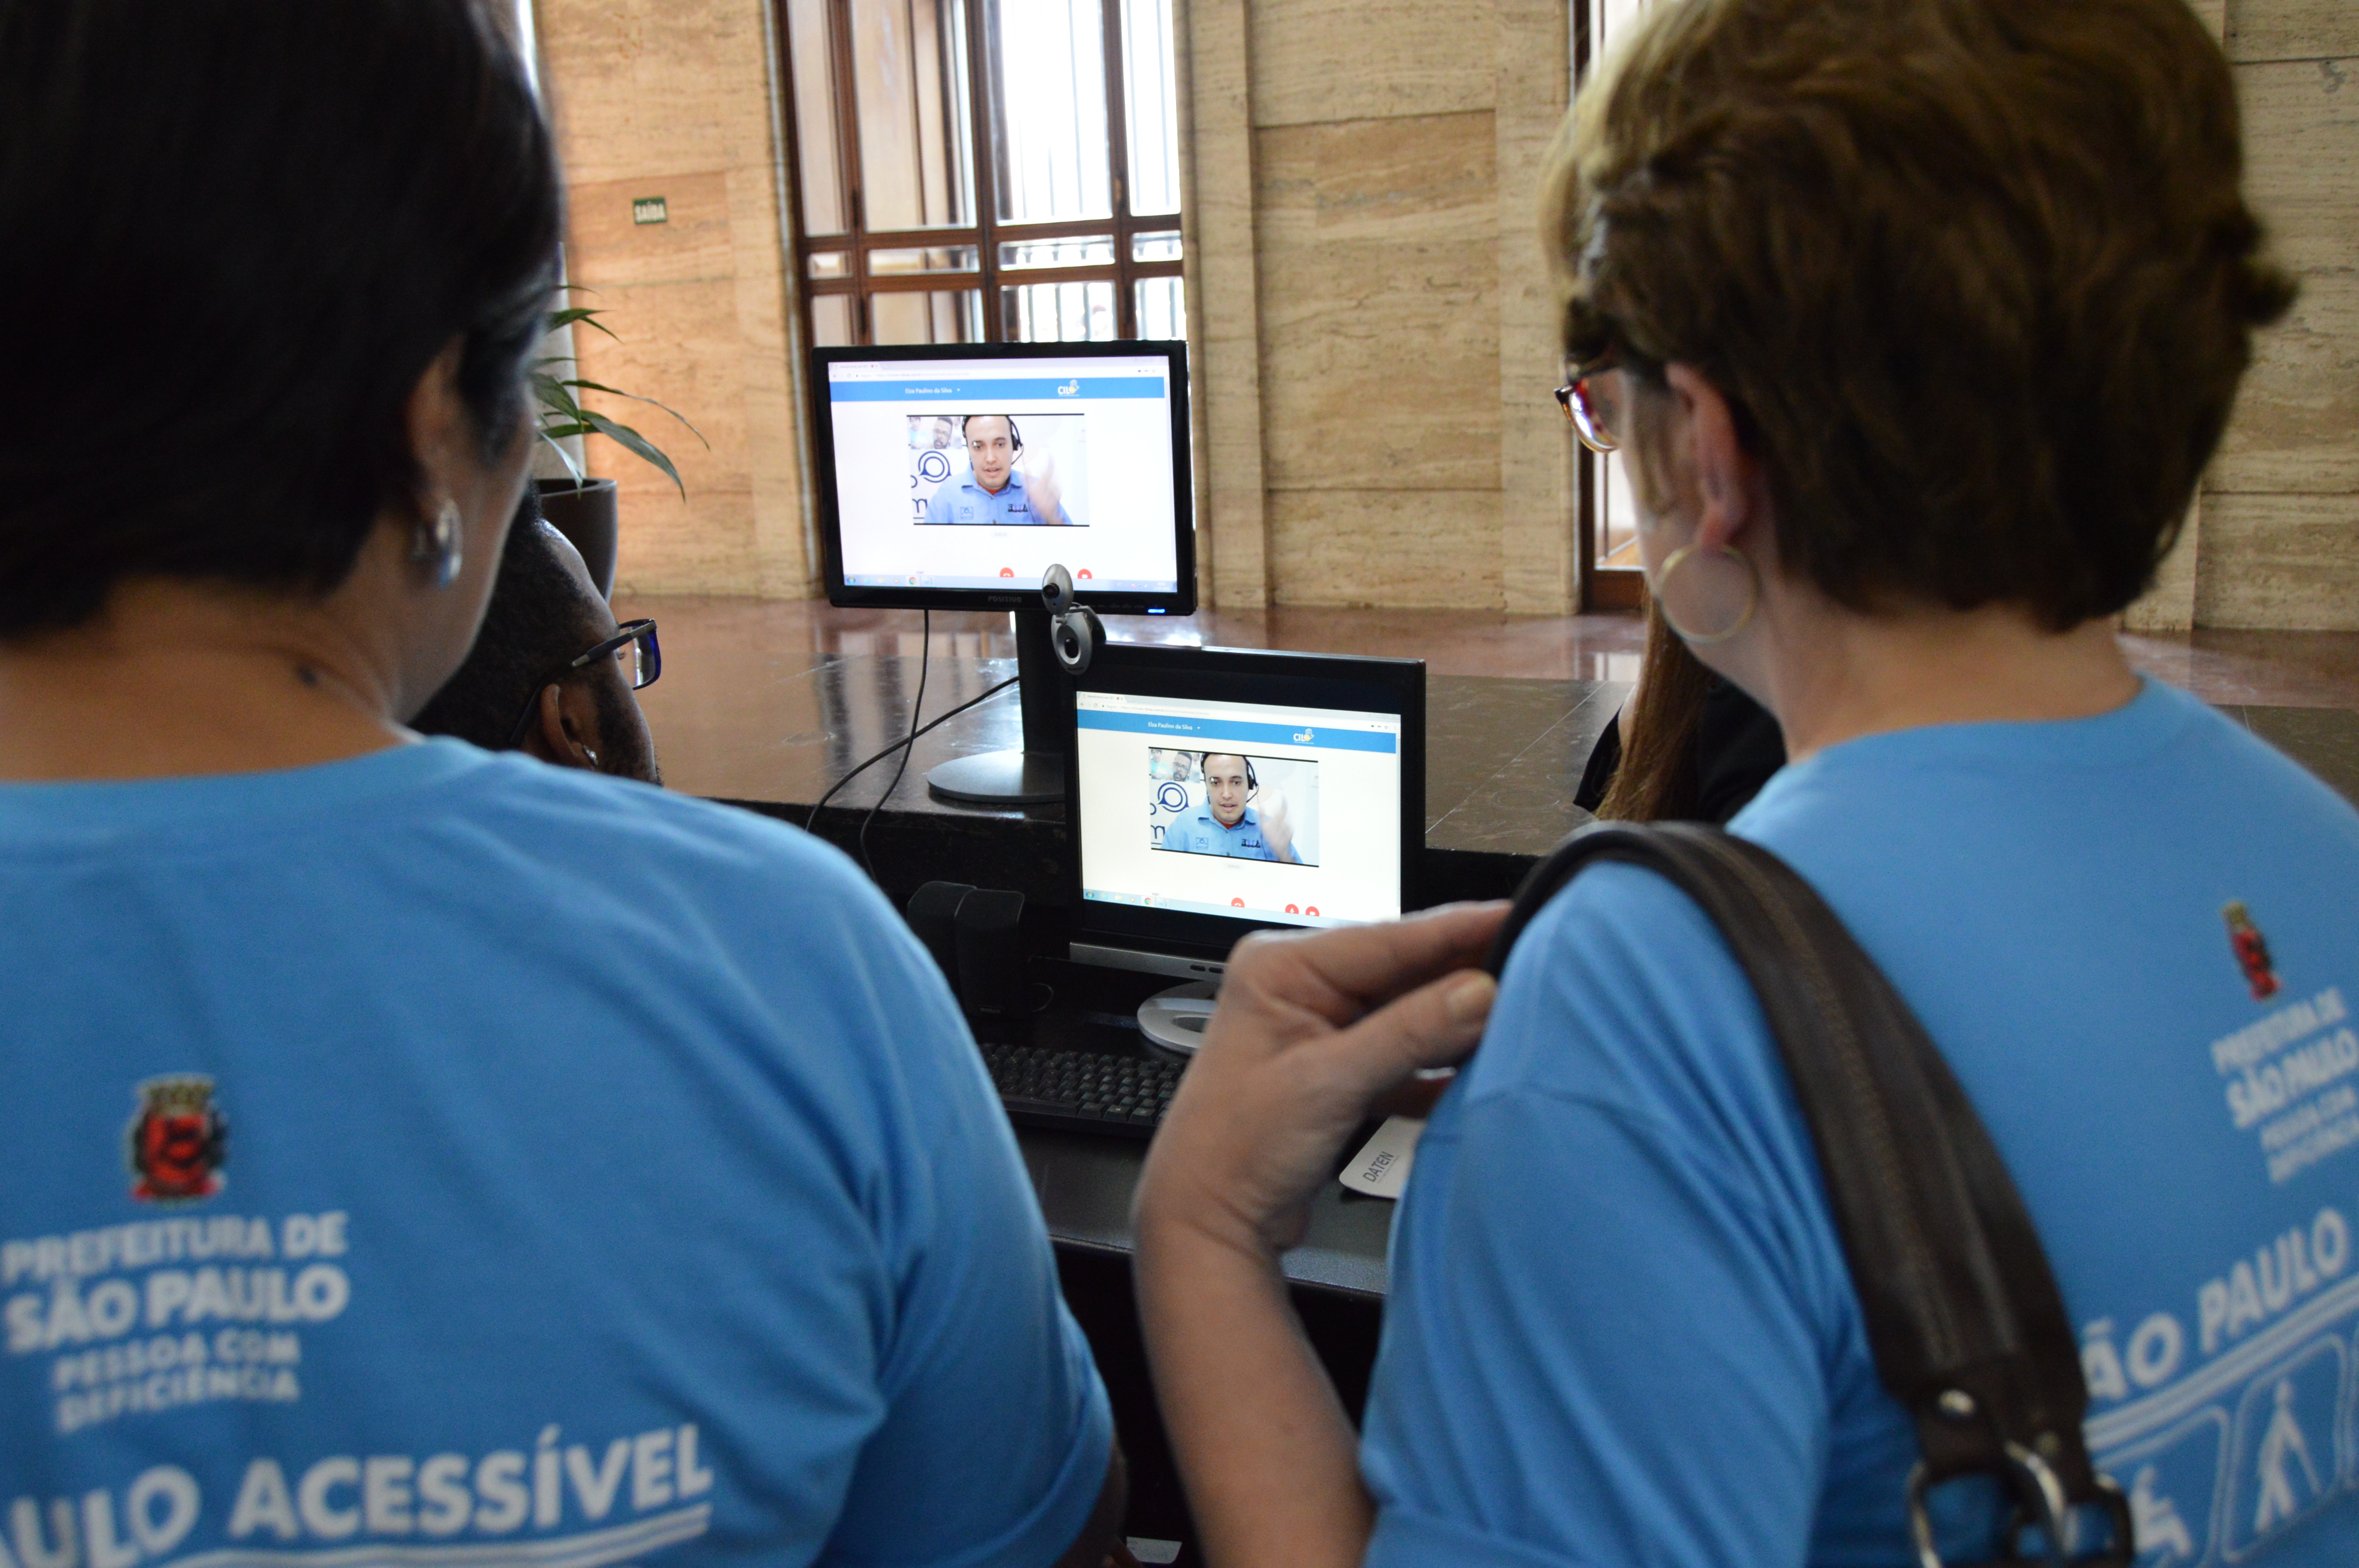 Intérprete de Libras na tela do computador, por meio do aplicatico da CIL, conversa com a equipe da Prefeitura de São Paulo, que está salão de entrada da Prefeitura de São Paulo.